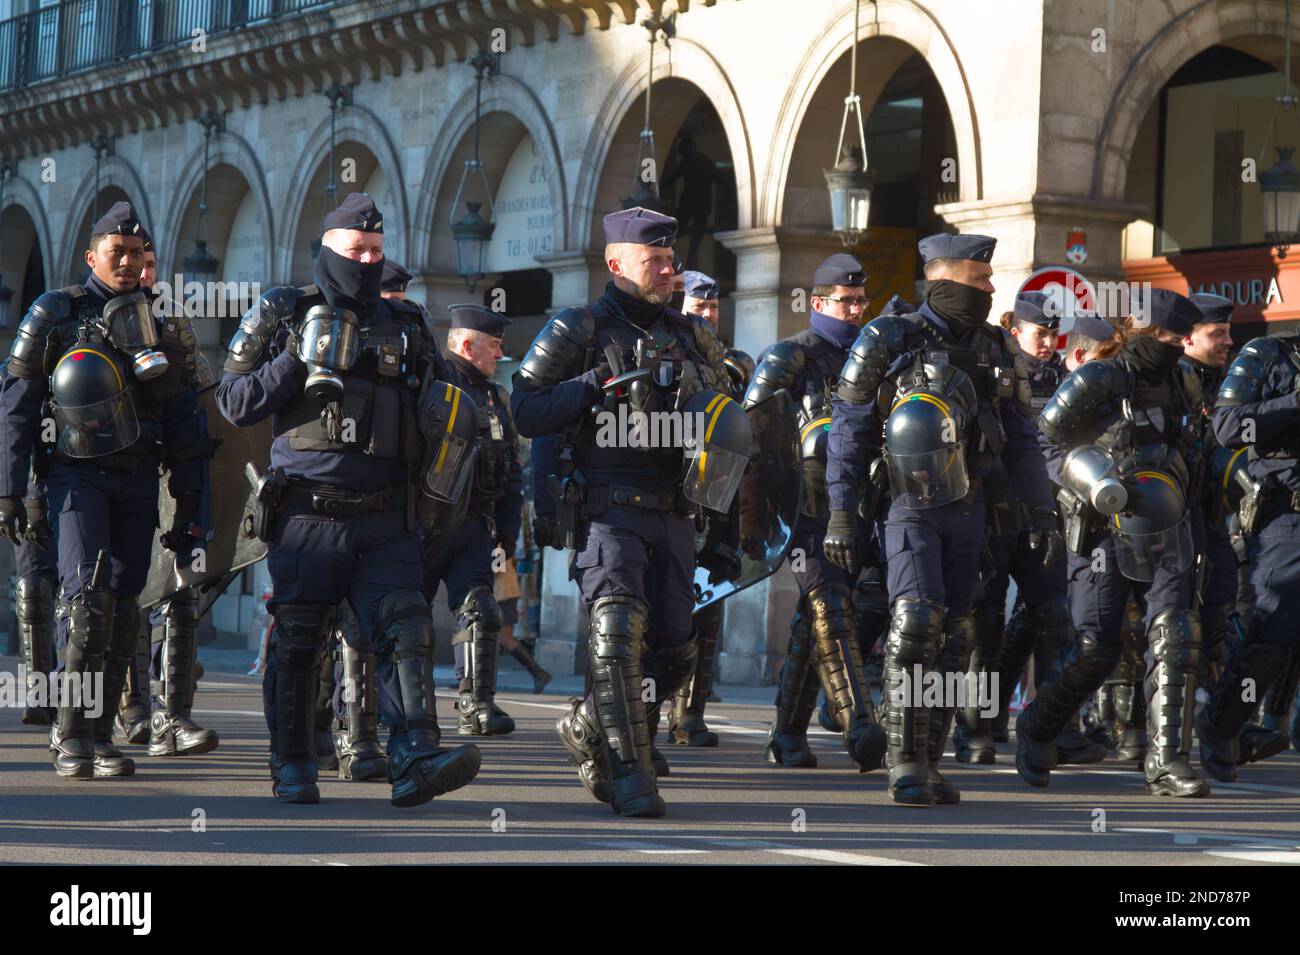 Gruppo di polizia nazionale francese CRS che marciano in Riot Gear con caschi durante gli scioperi civili e le proteste contro l'innalzamento dell'età pensionabile Parigi Foto Stock